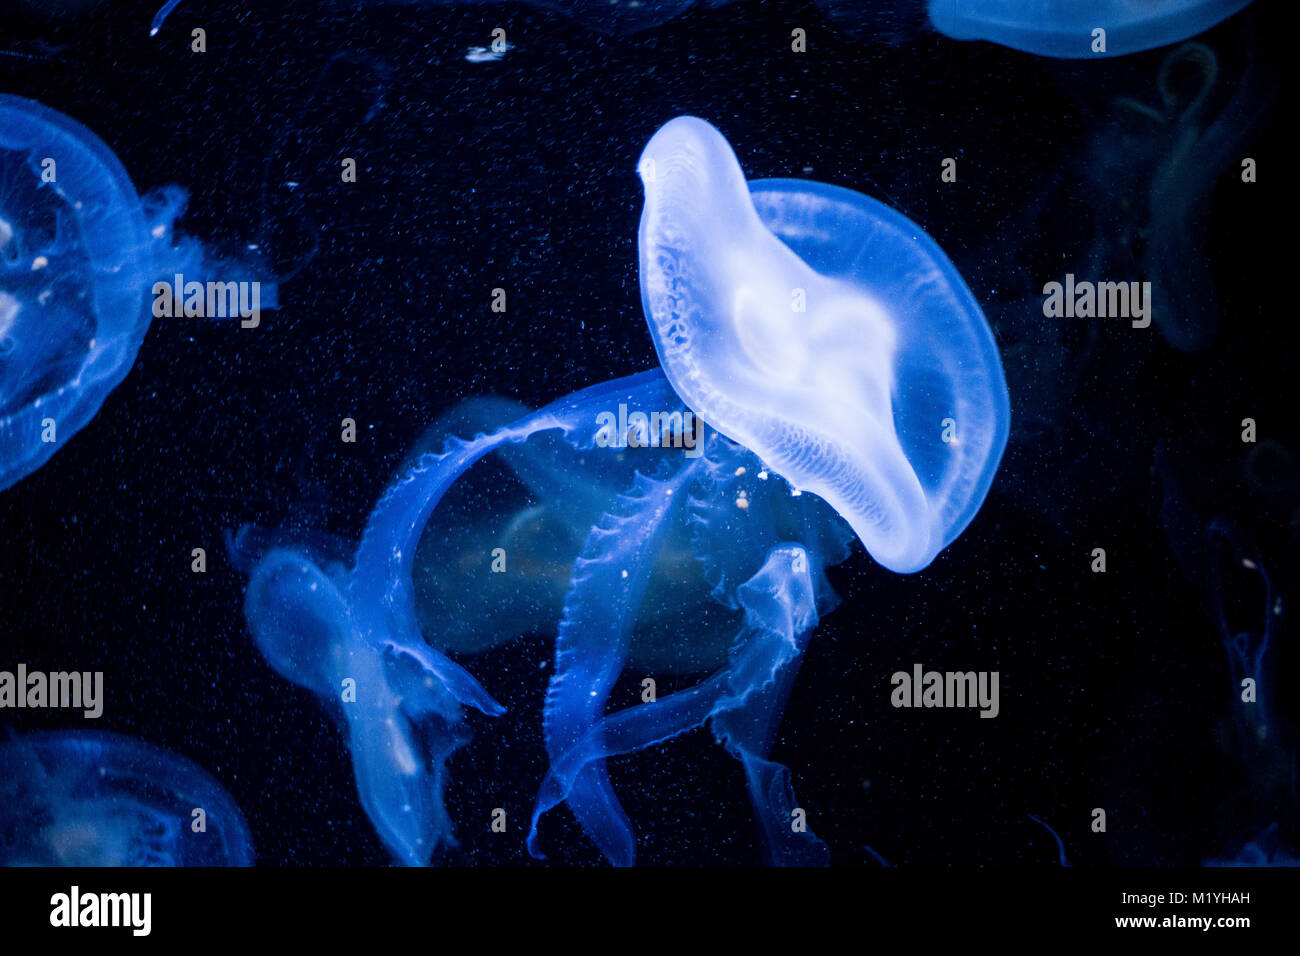 Méduse bioluminescente sous la lumière ultraviolette Banque D'Images